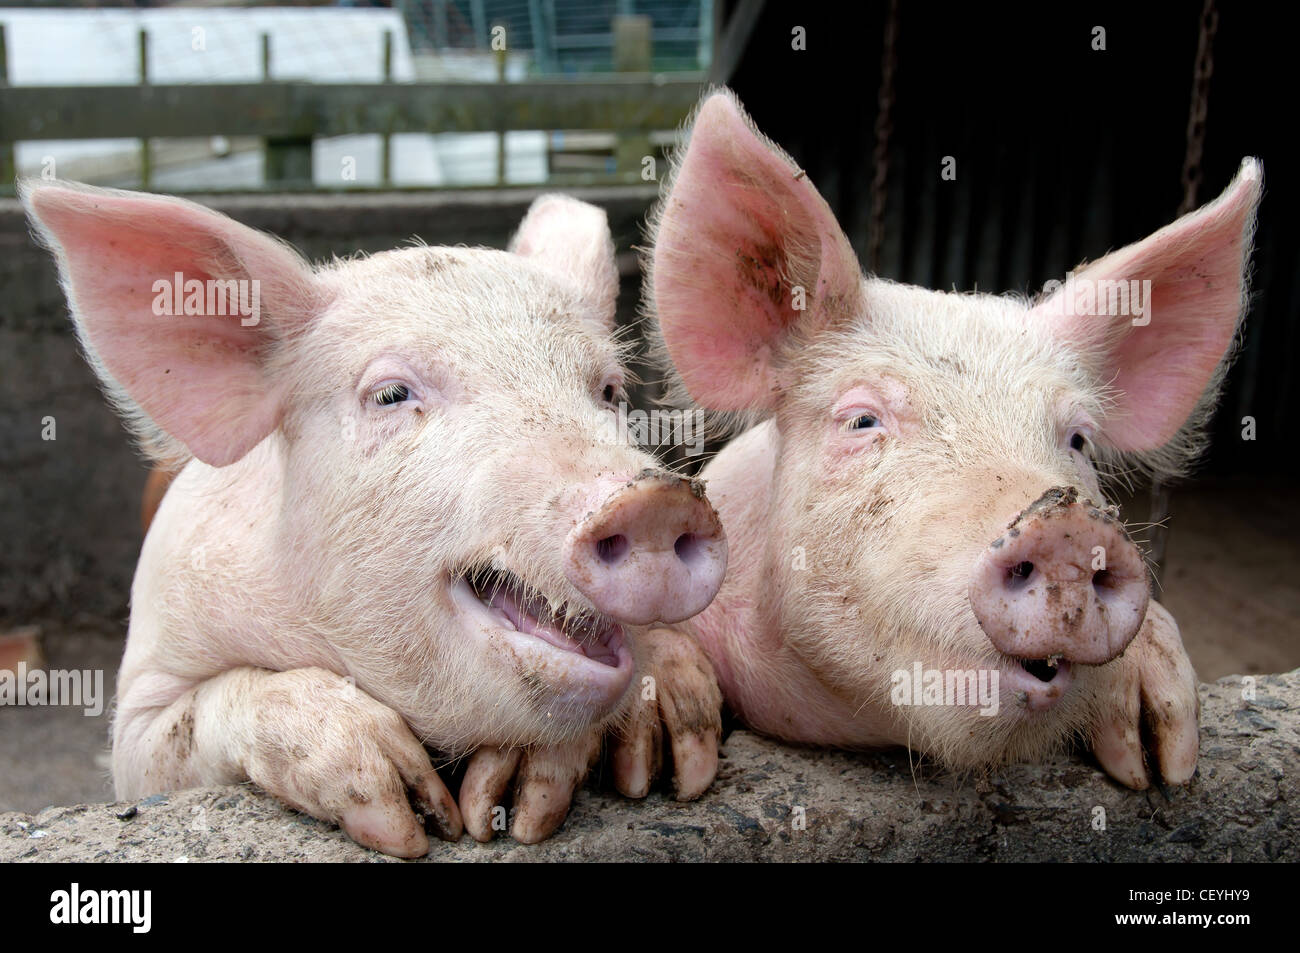 Lustige Schweine Die Kletterte Auf Seite Der Schweinestall Ein Gesprach Oder Ein Klatsch Uber Die Farm Zu Haben Stockfotografie Alamy